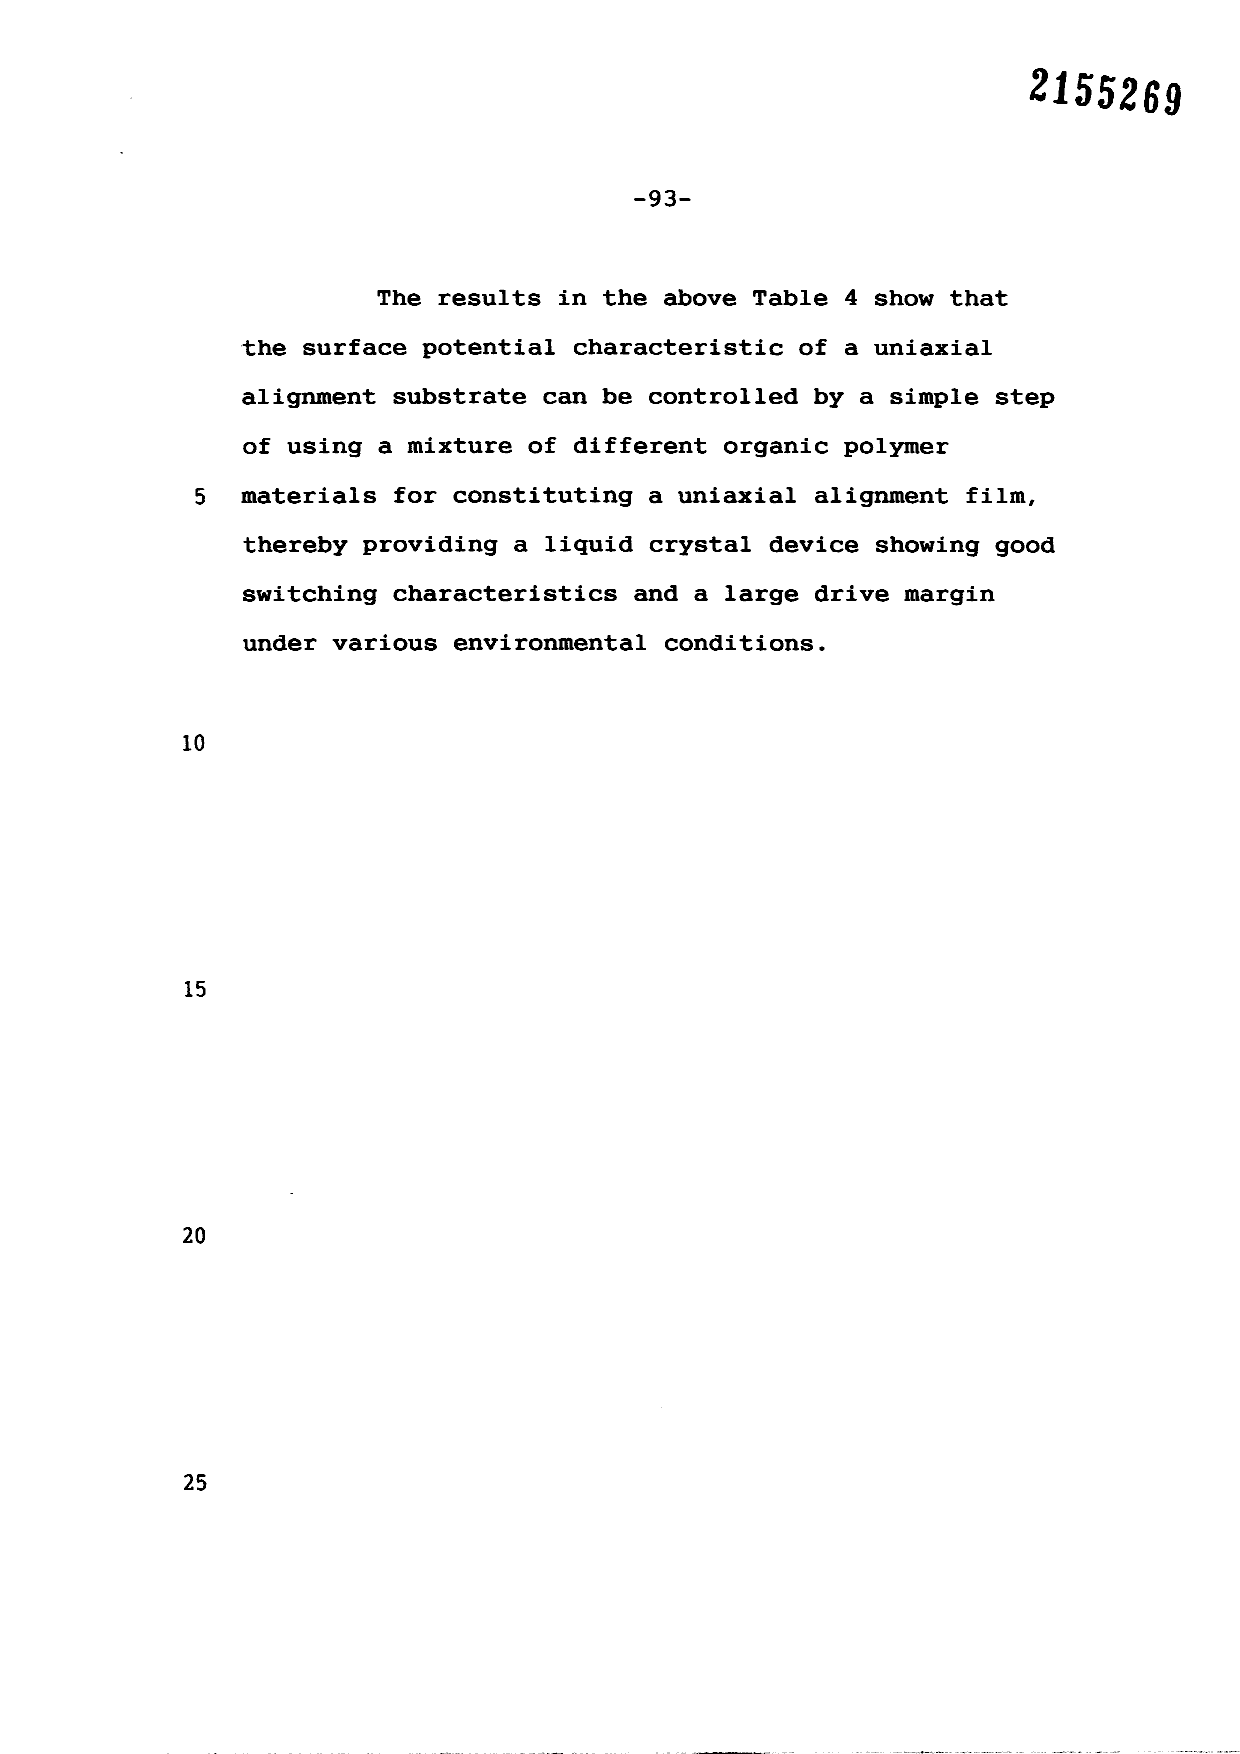 Canadian Patent Document 2155269. Description 19990909. Image 93 of 93